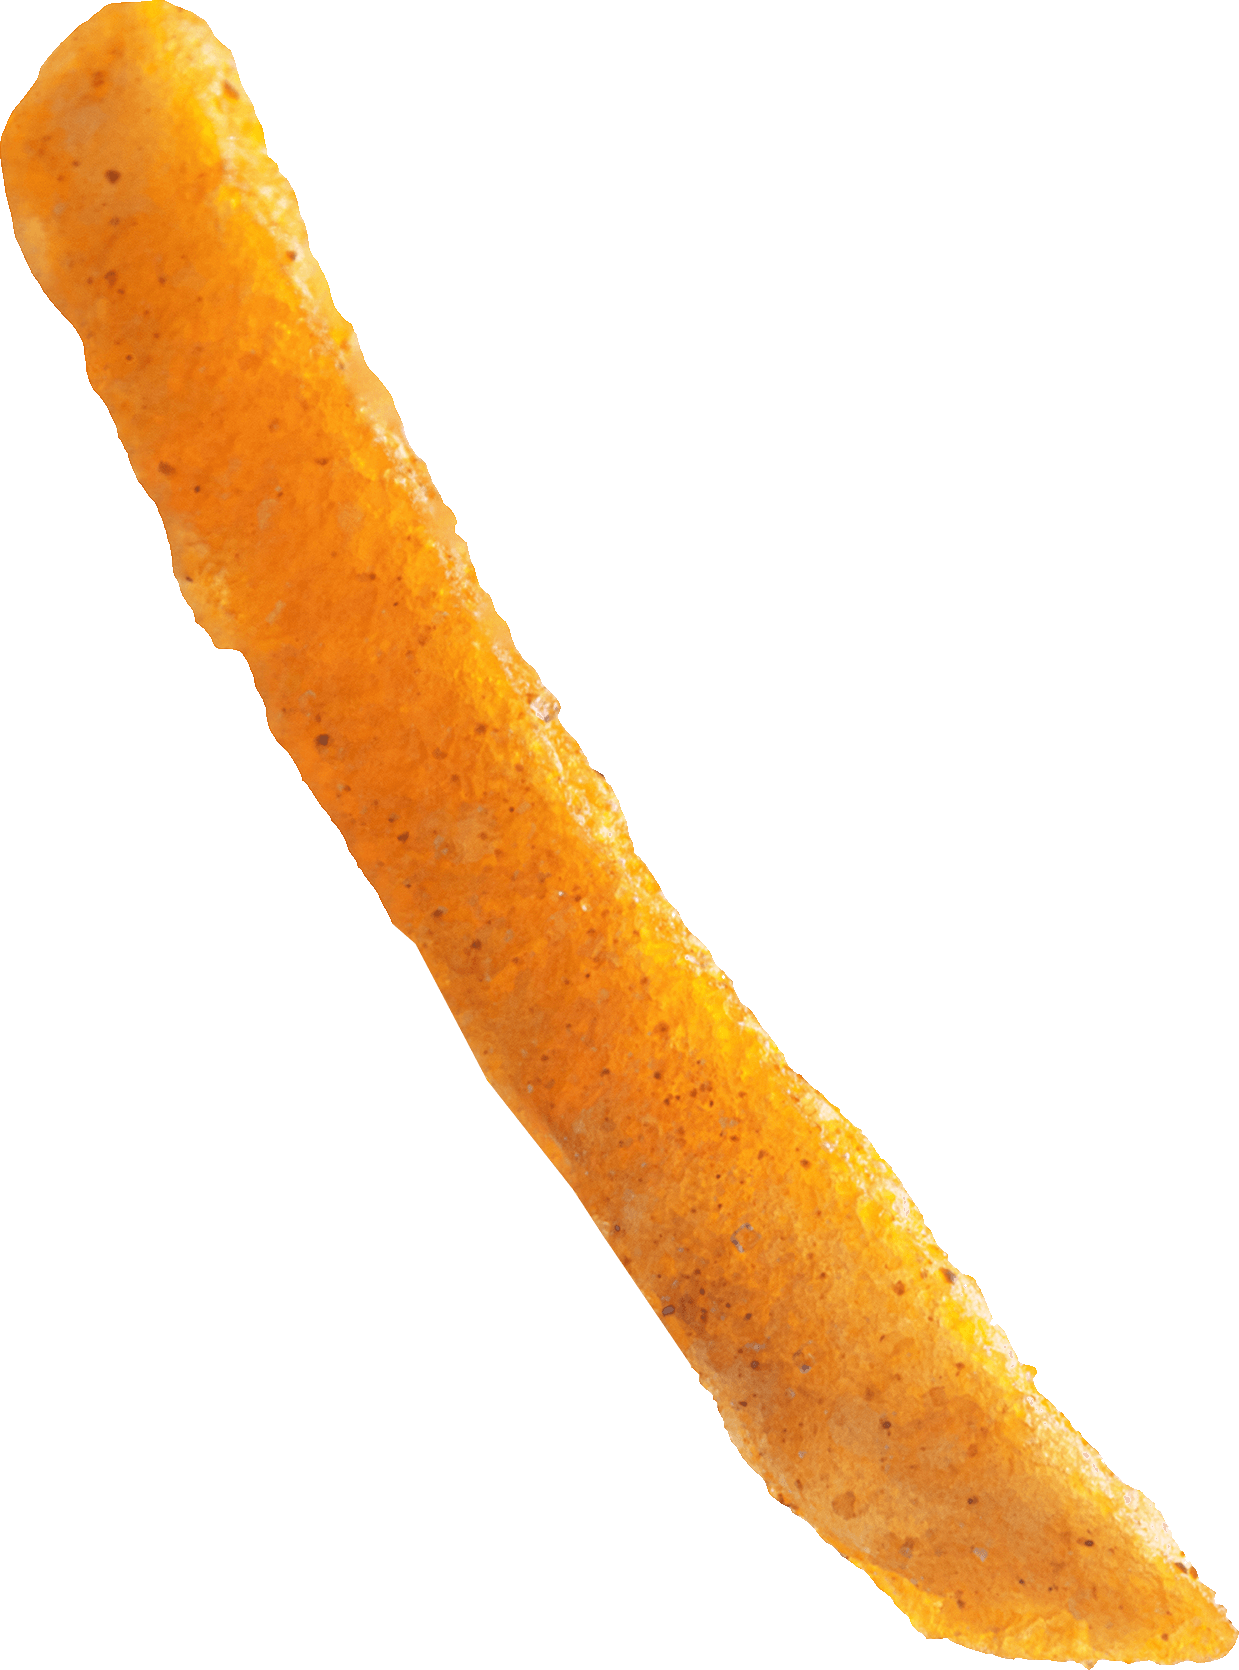 a yummmy, crispy french fry